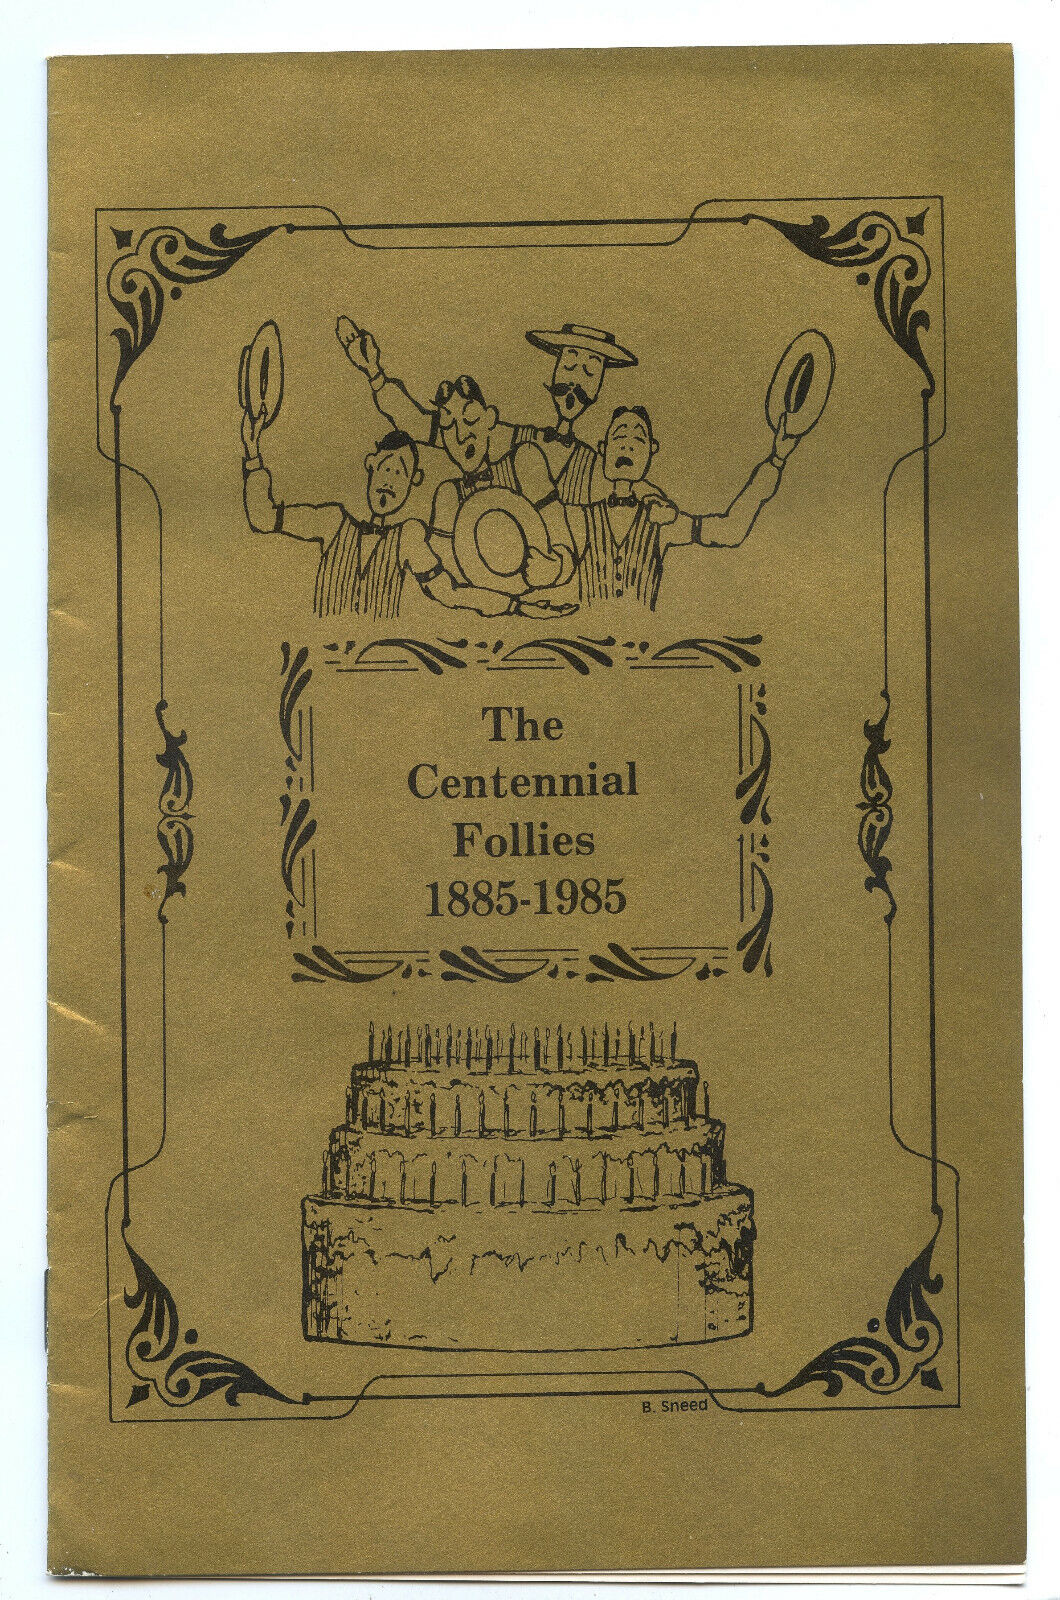 Newton (KS) High School The Centennial Follies 1885-1985 Program Booklet